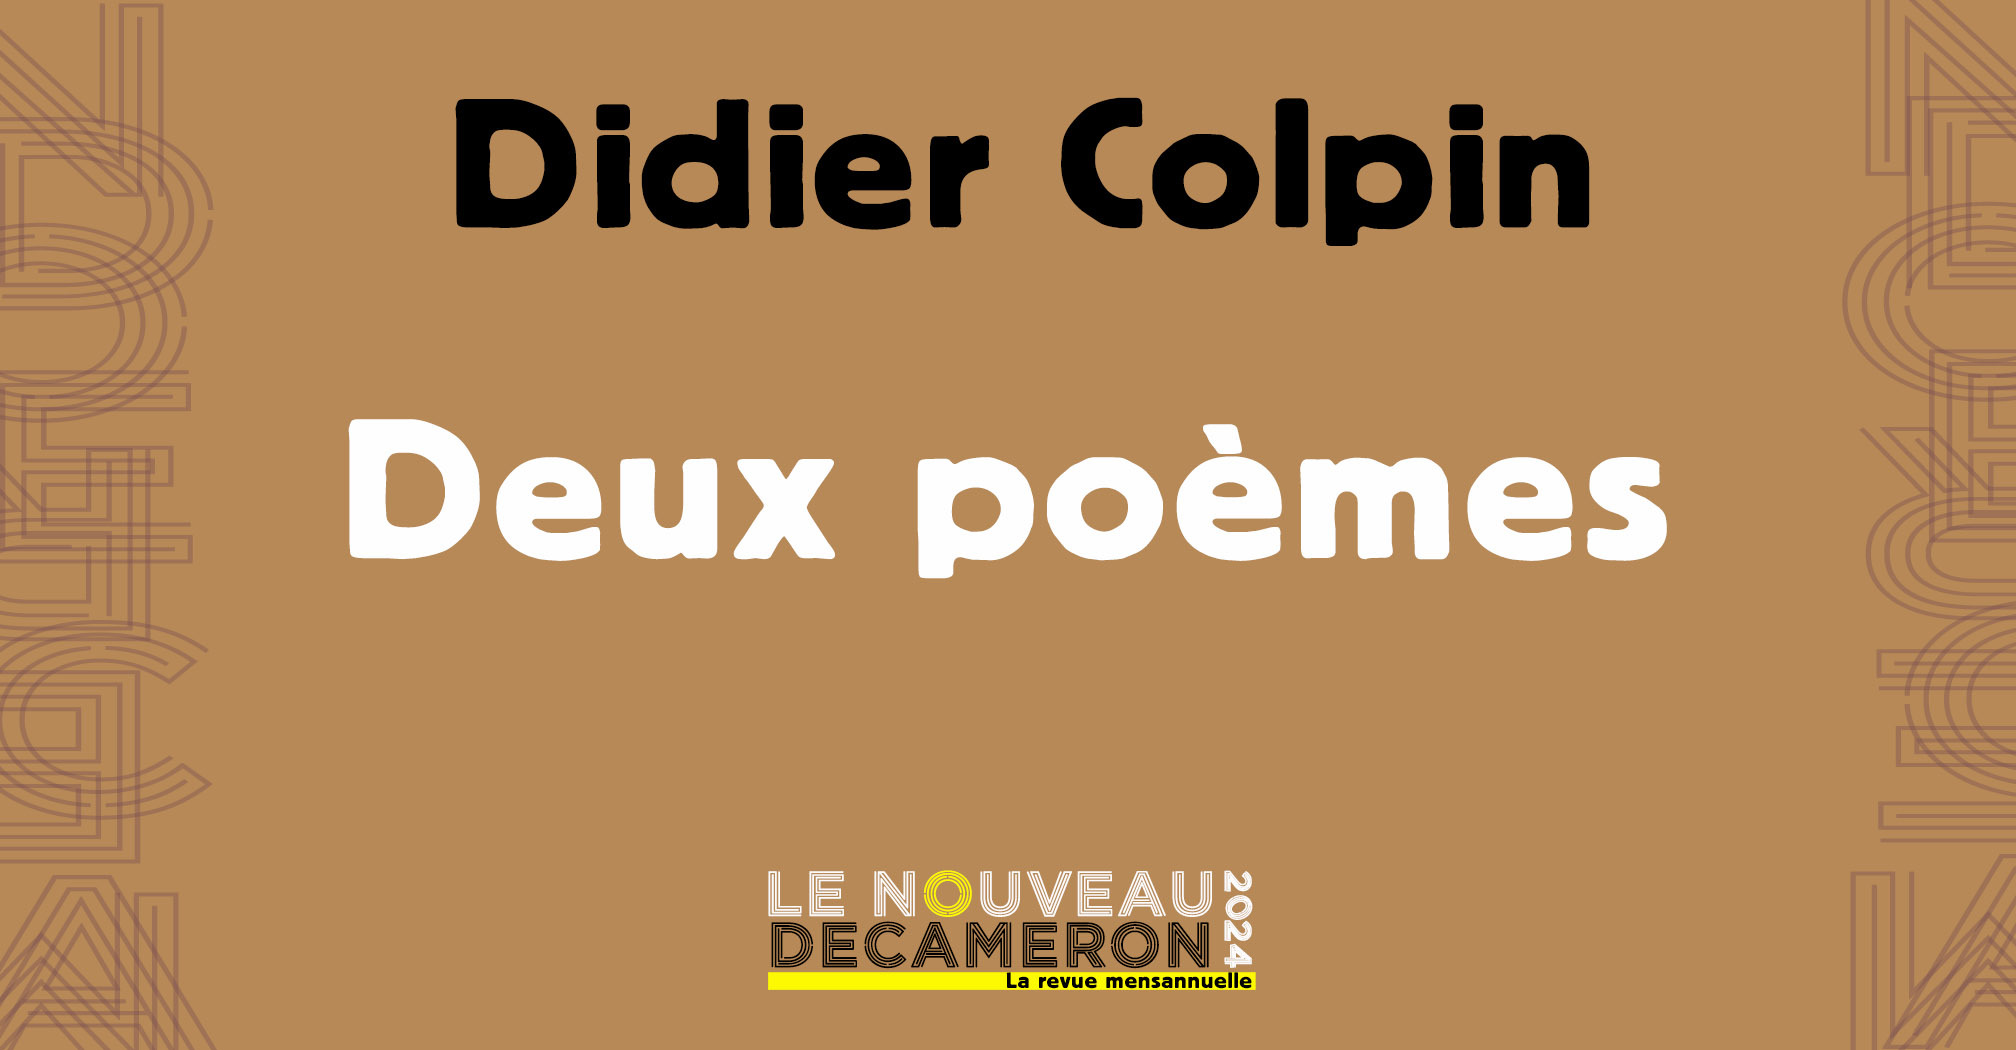 Didier Colpin - Deux poèmes